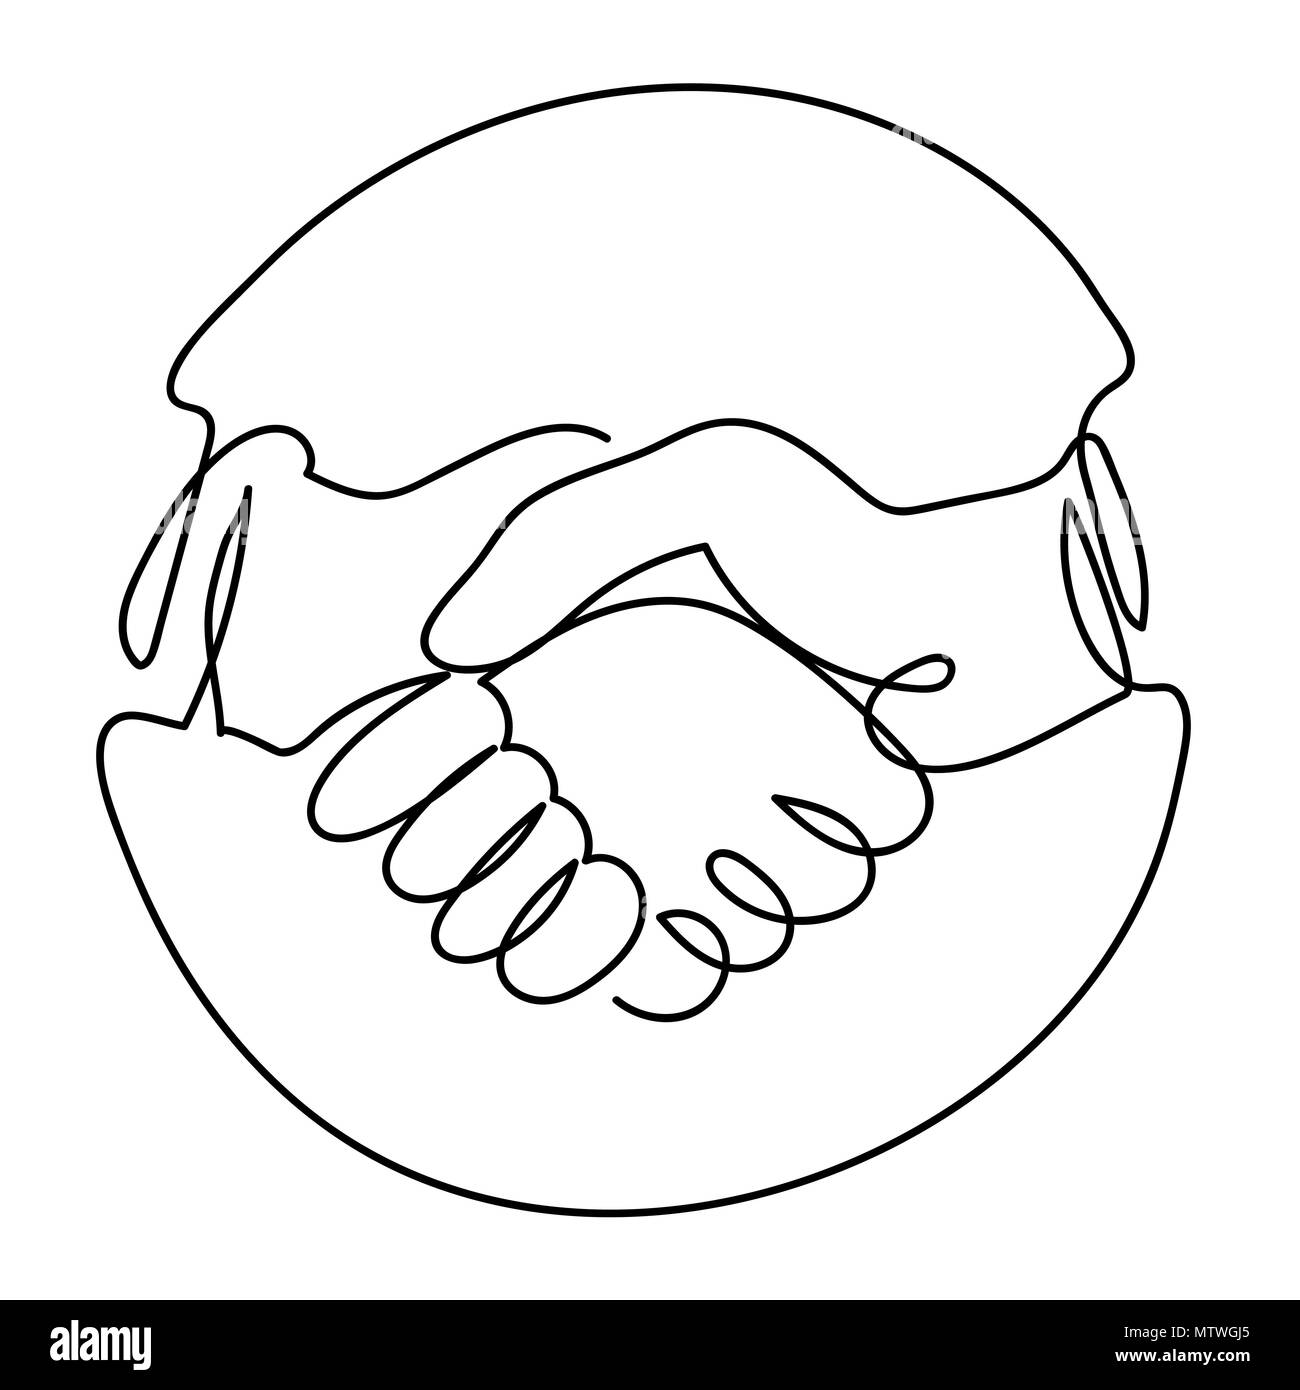 Der Vektor der Handshake Symbol im Kreis, Kontinuierliche eine Linie zeichnen. Schwarze und weiße Vector Illustration. Konzept für Logo, Karte, Banner, Poster, Flyer Stock Vektor